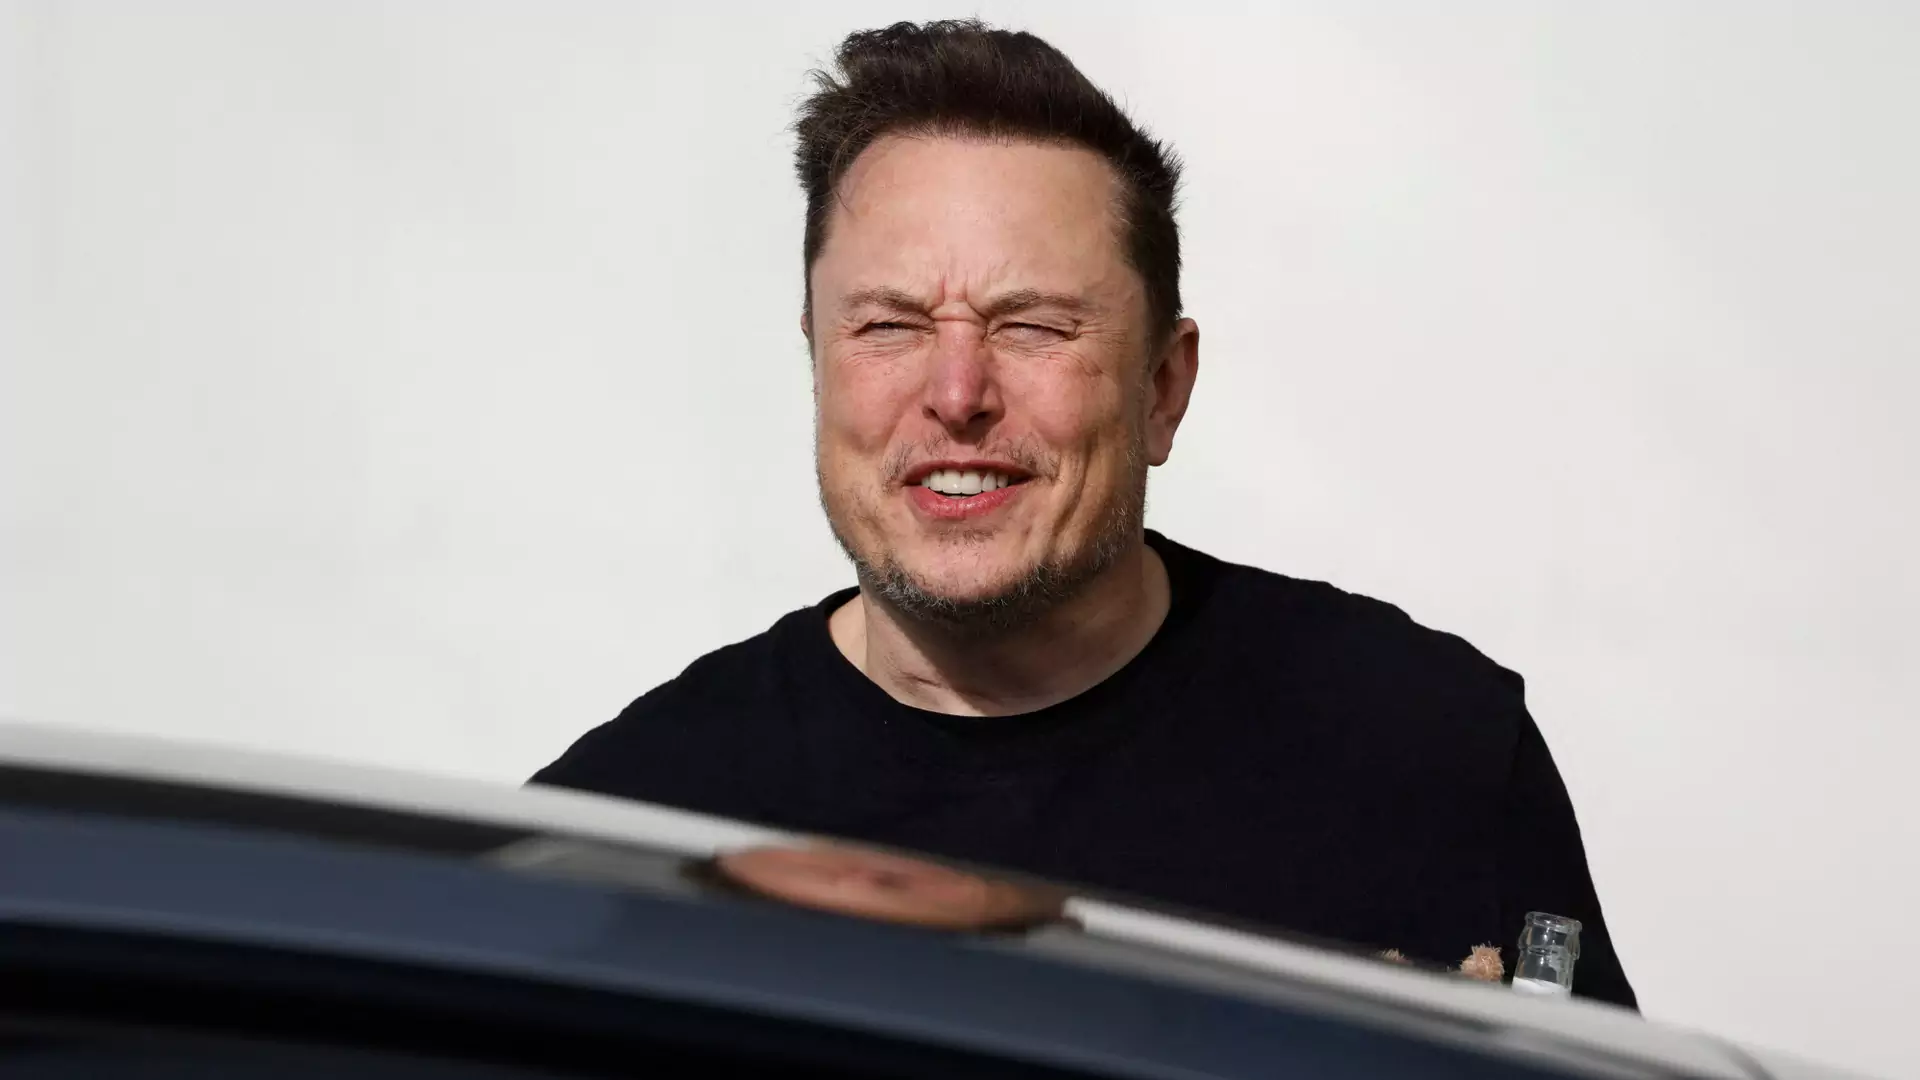 Elon Musk pozwany. Może zapłacić ogromne odszkodowanie